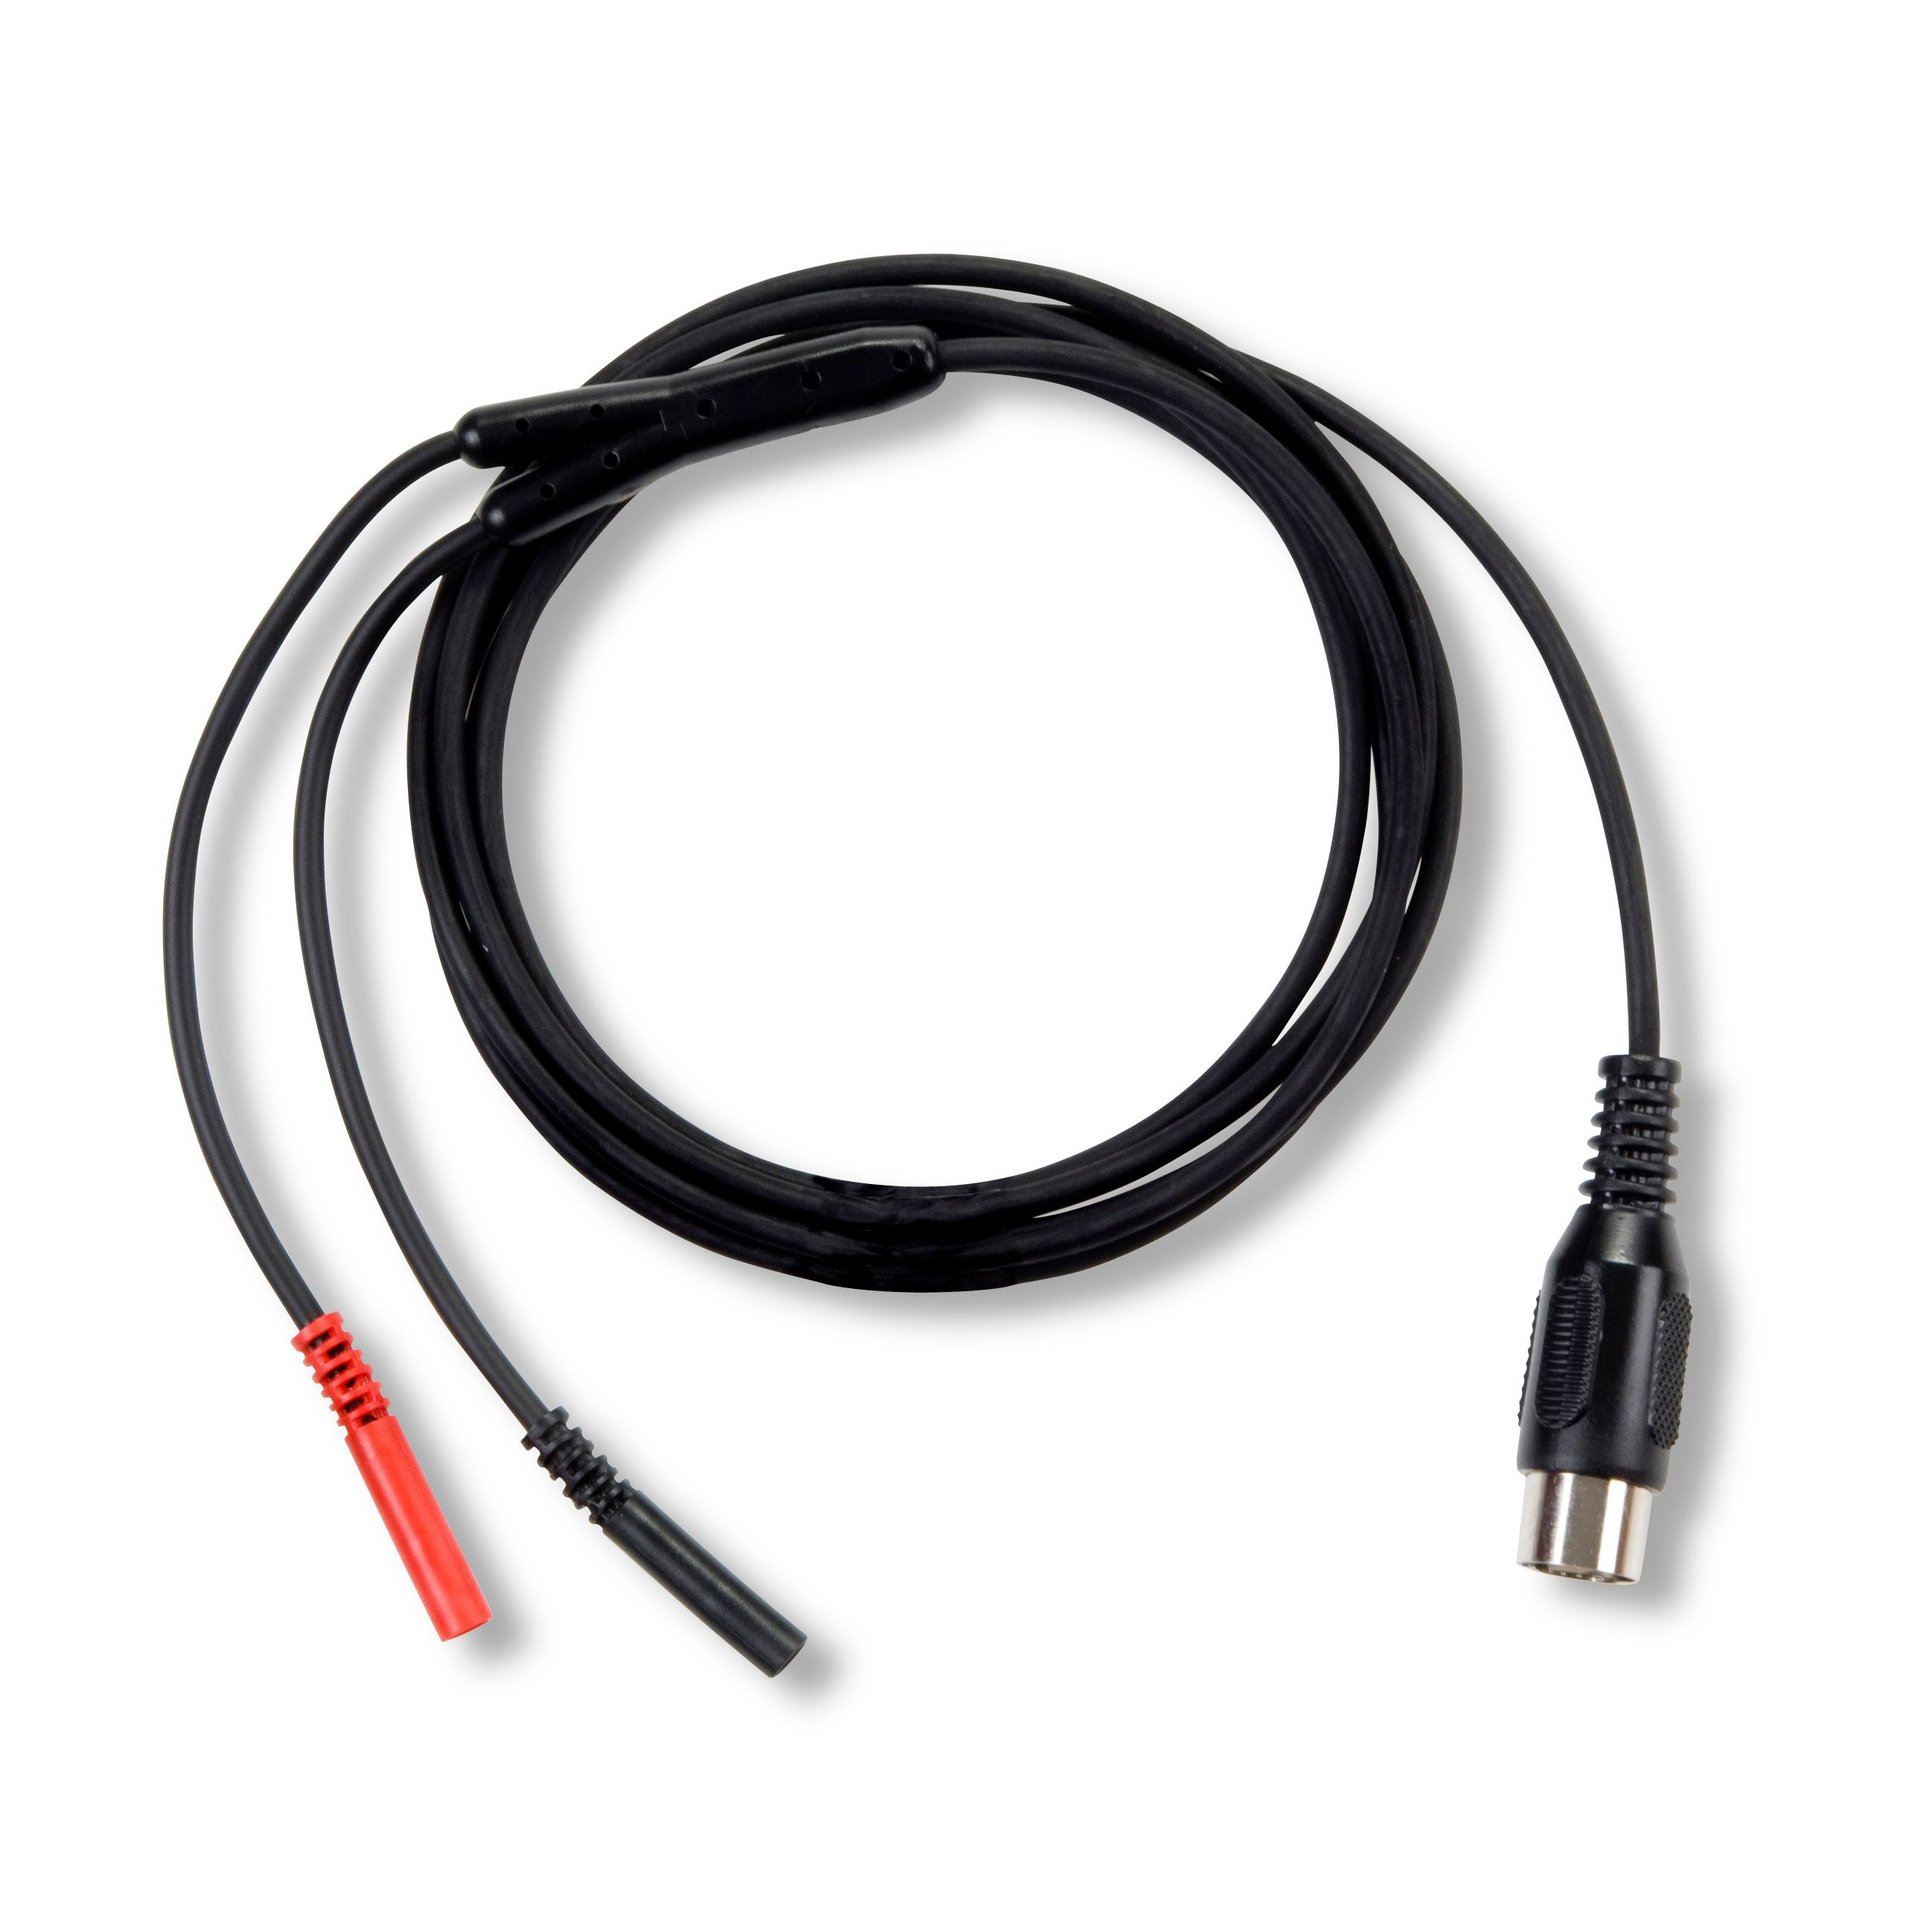 Elektrodekabel afgeschermd EMG/elektro - 2-aderig - plug 2 mm